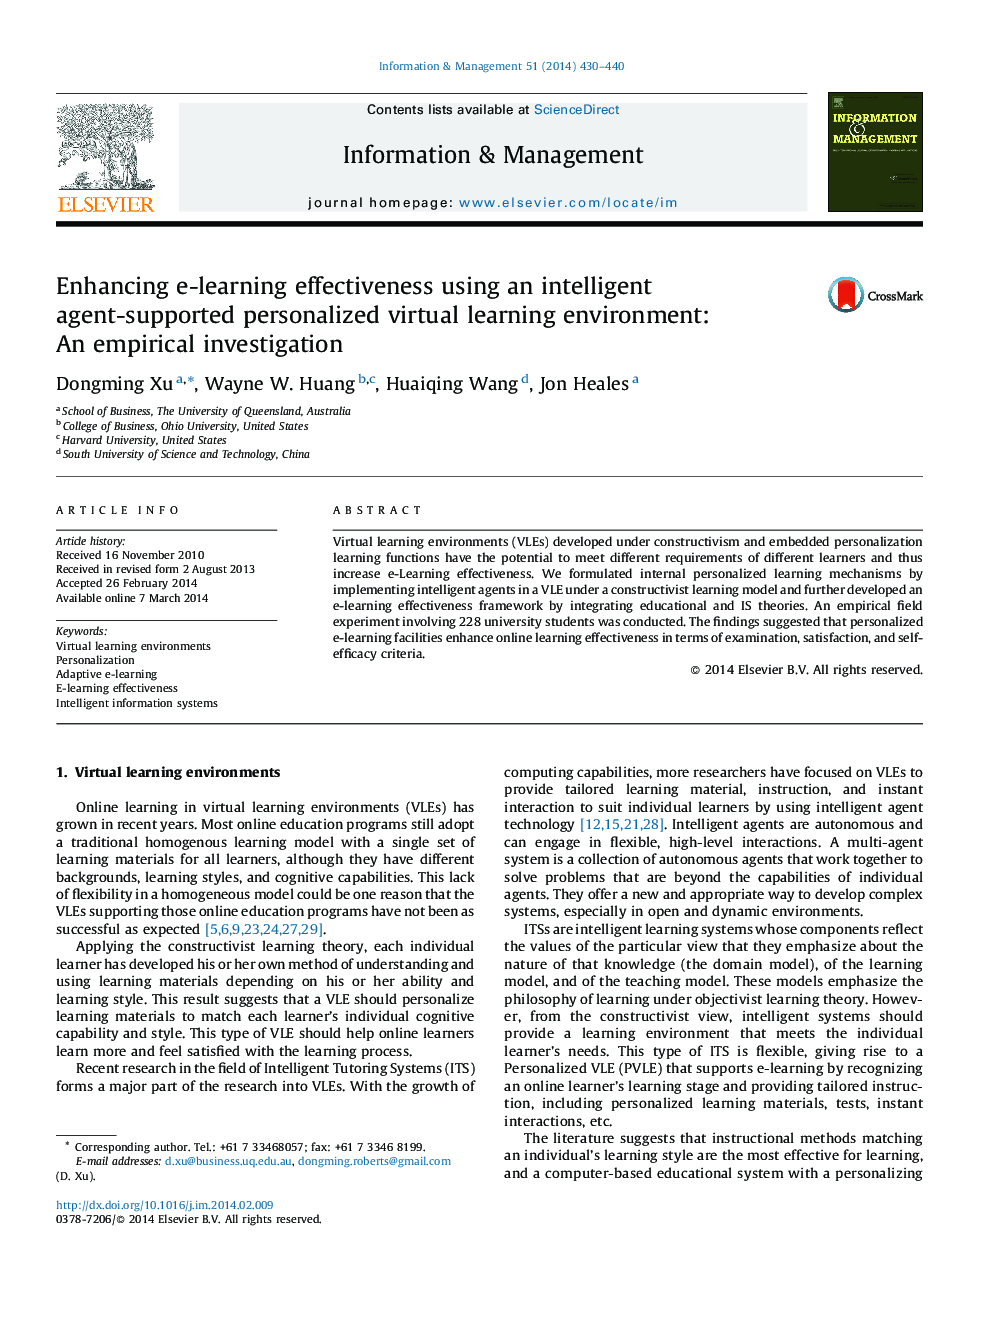 افزایش اثربخشی آموزش الکترونیکی با استفاده از یک محیط یادگیری مجازی شخصی مبتنی بر عامل هوشمند: تحقیق تجربی 